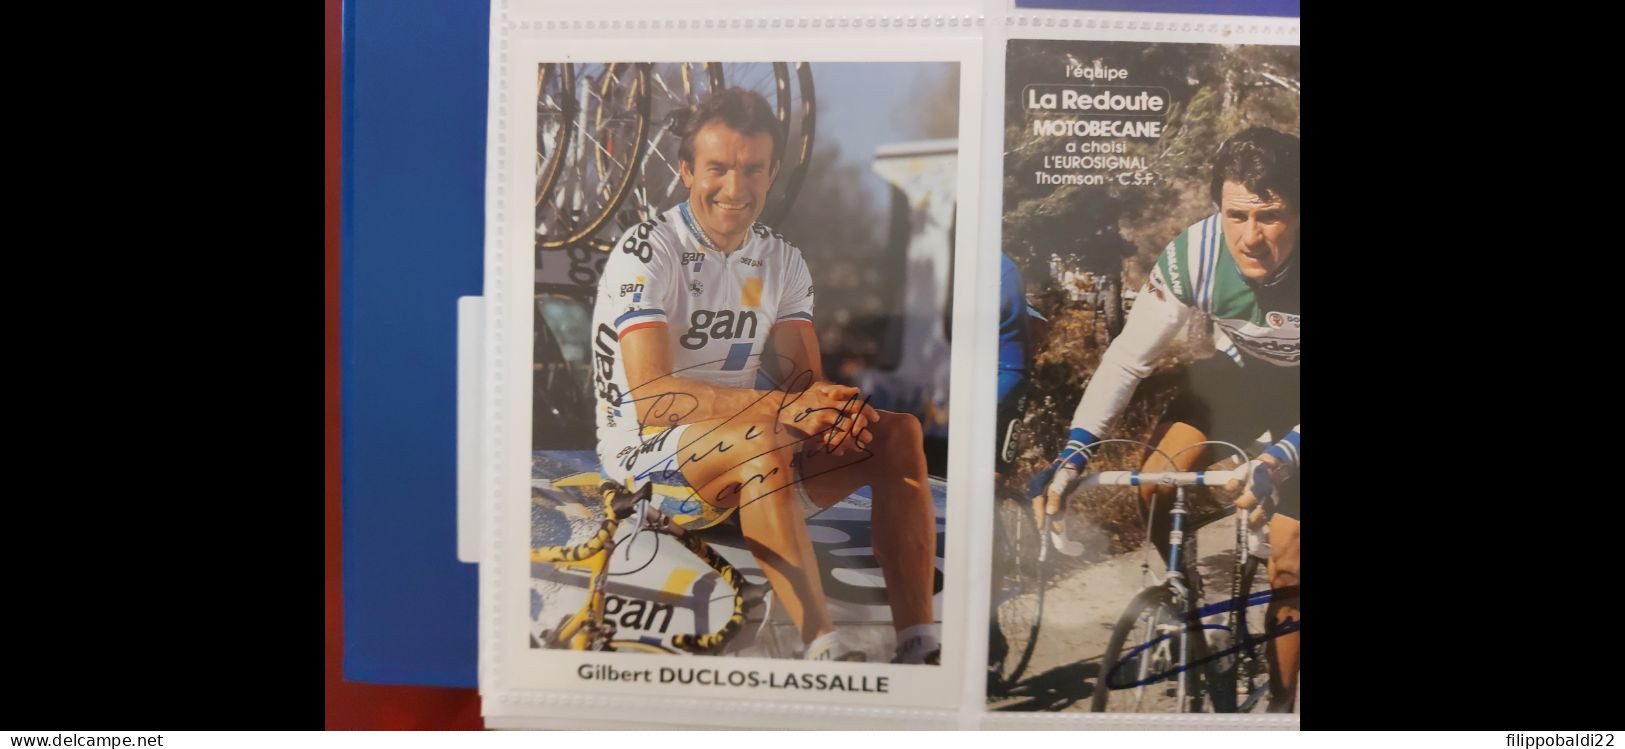 Gilbert Duclos-Lassalle 10x15 Autografo Autograph Signed - Cyclisme